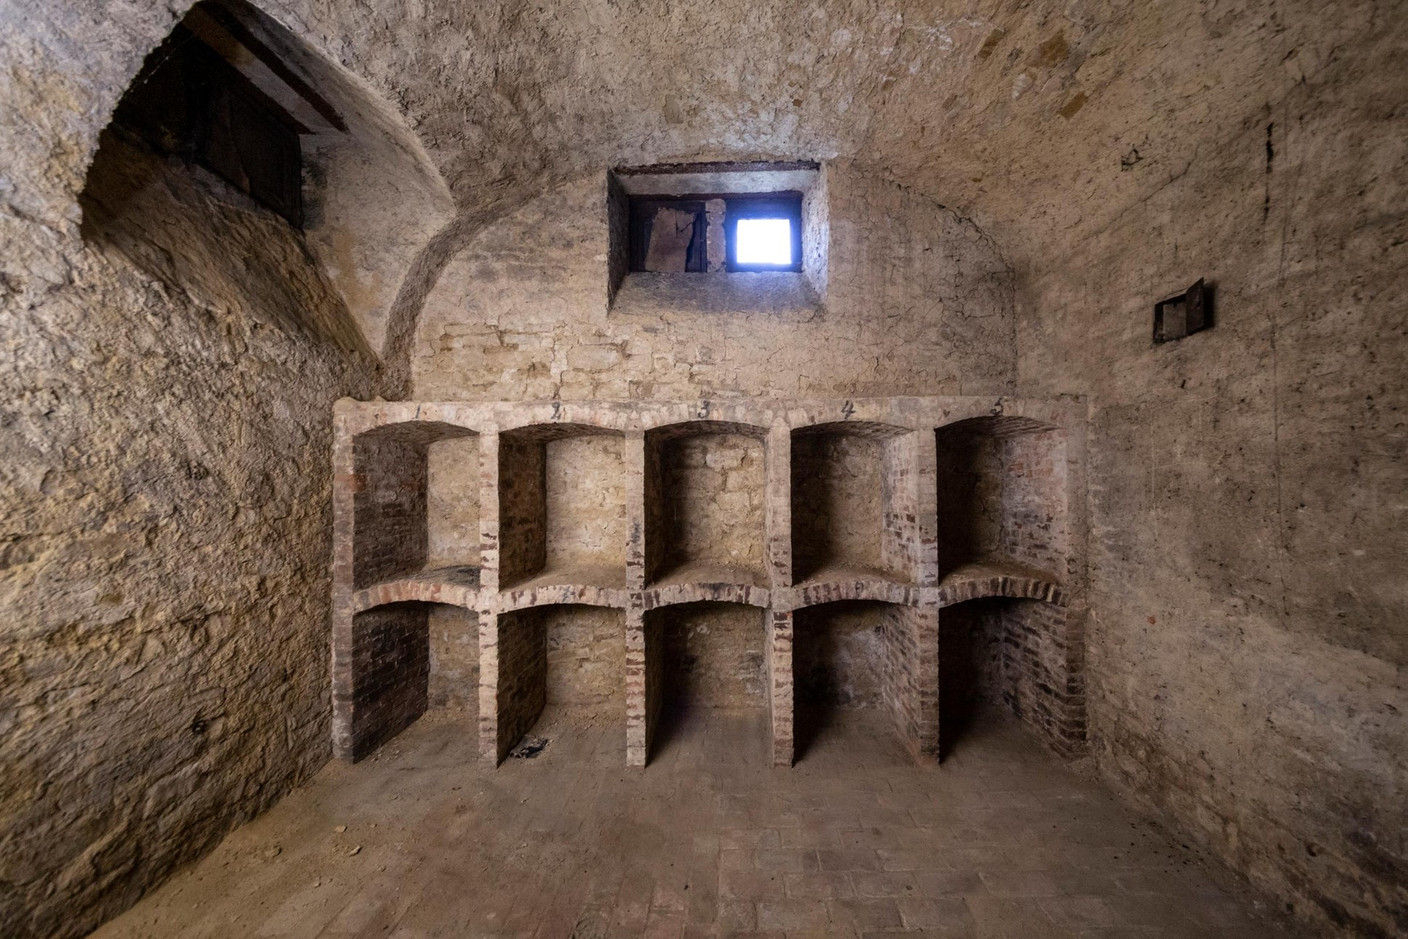 Au sous-sol, on trouve des caves voûtées et des rangements pour le vin. (Photo: Jan Hanrion/Patricia Pitsch – archives Maison Moderne)